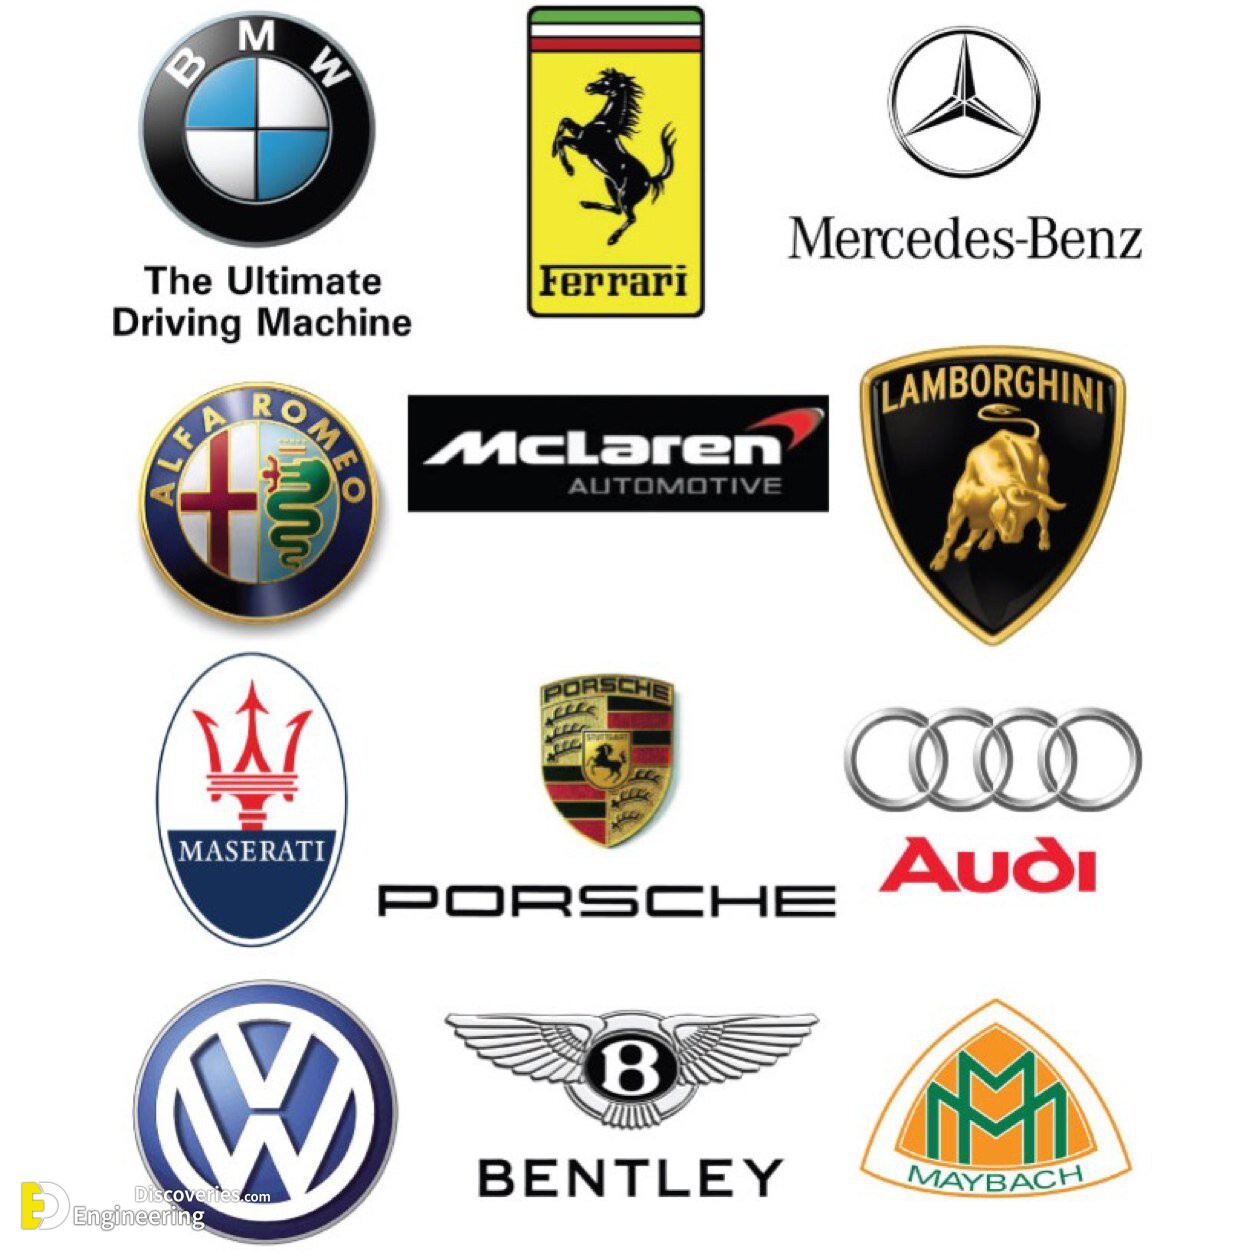 car manufacturers logos and names